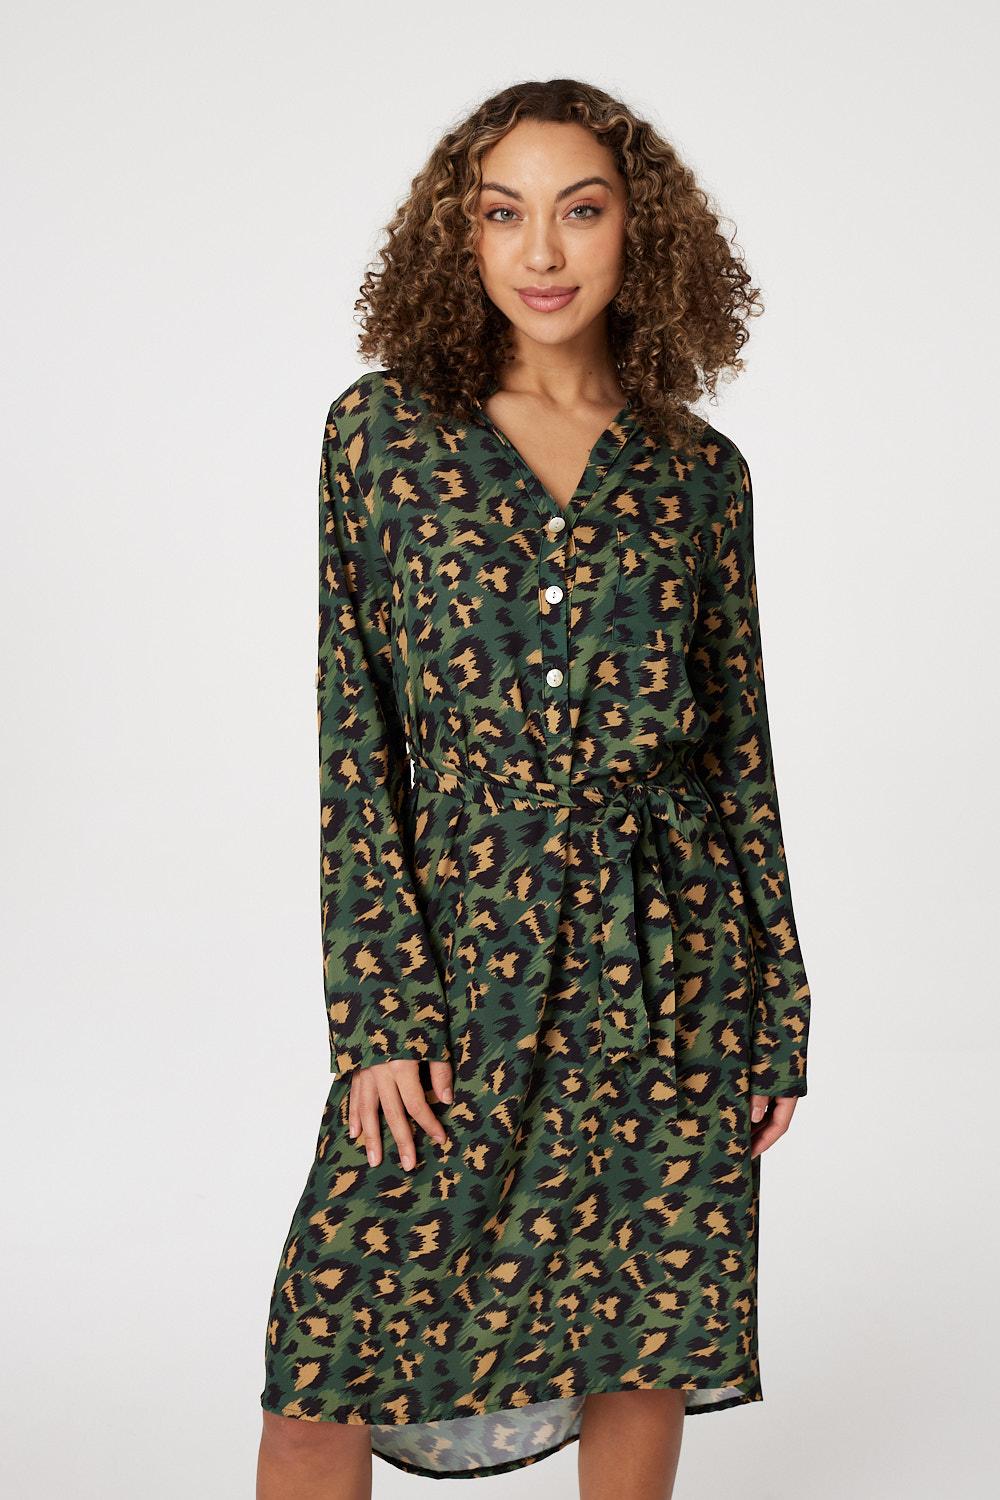 Green | Leopard Print Button Front Dress